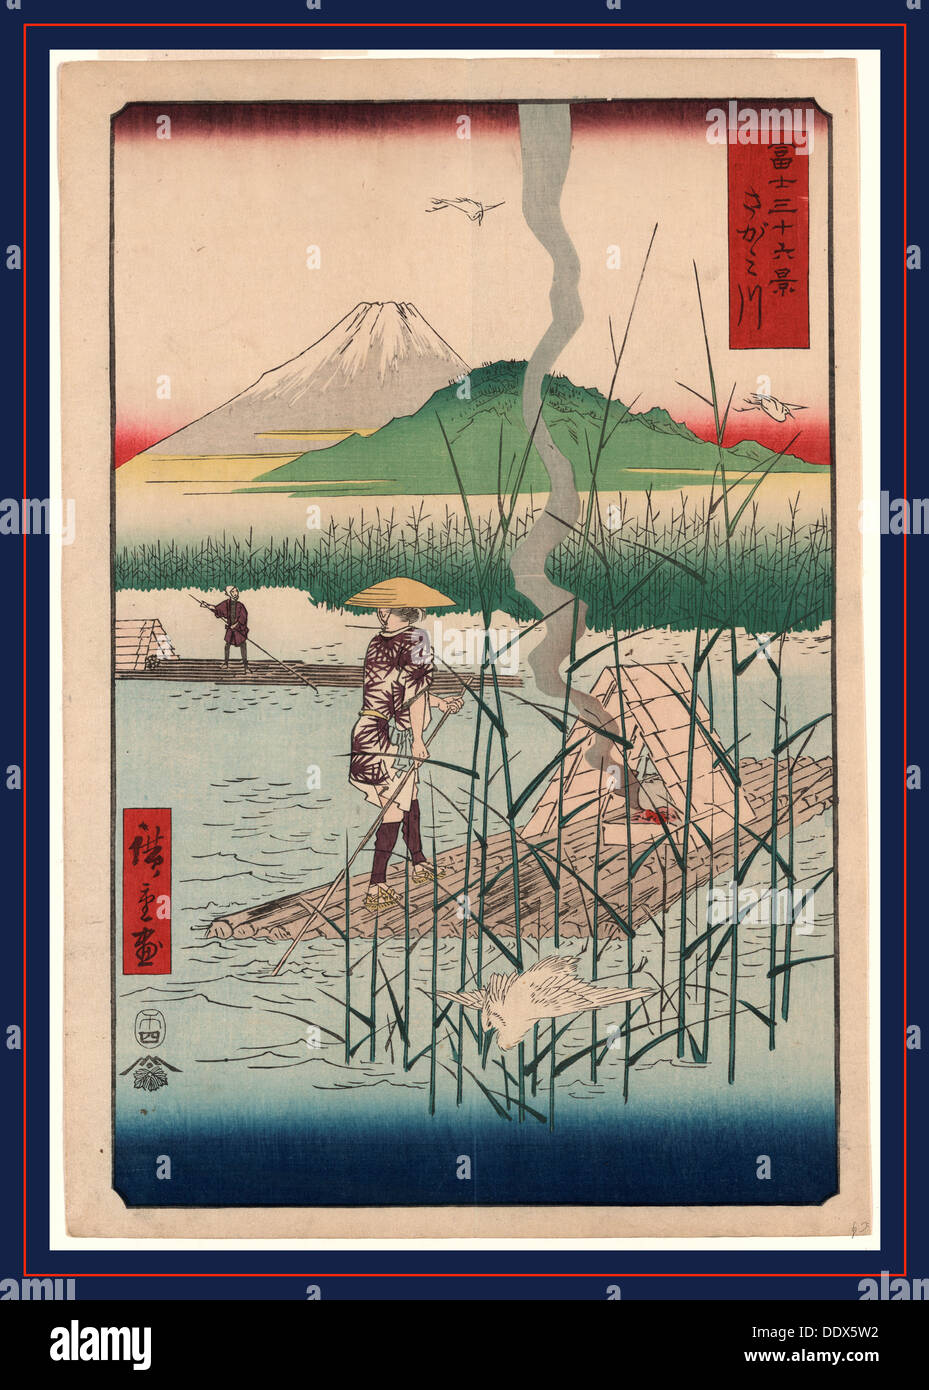 [Sagamigawa], Sagami River. [Tokyo] : Tsuta-ya Kichizo, 1858., 1 print : woodcut, color ; 35.9 x 24.7 cm., Japanese print shows Stock Photo